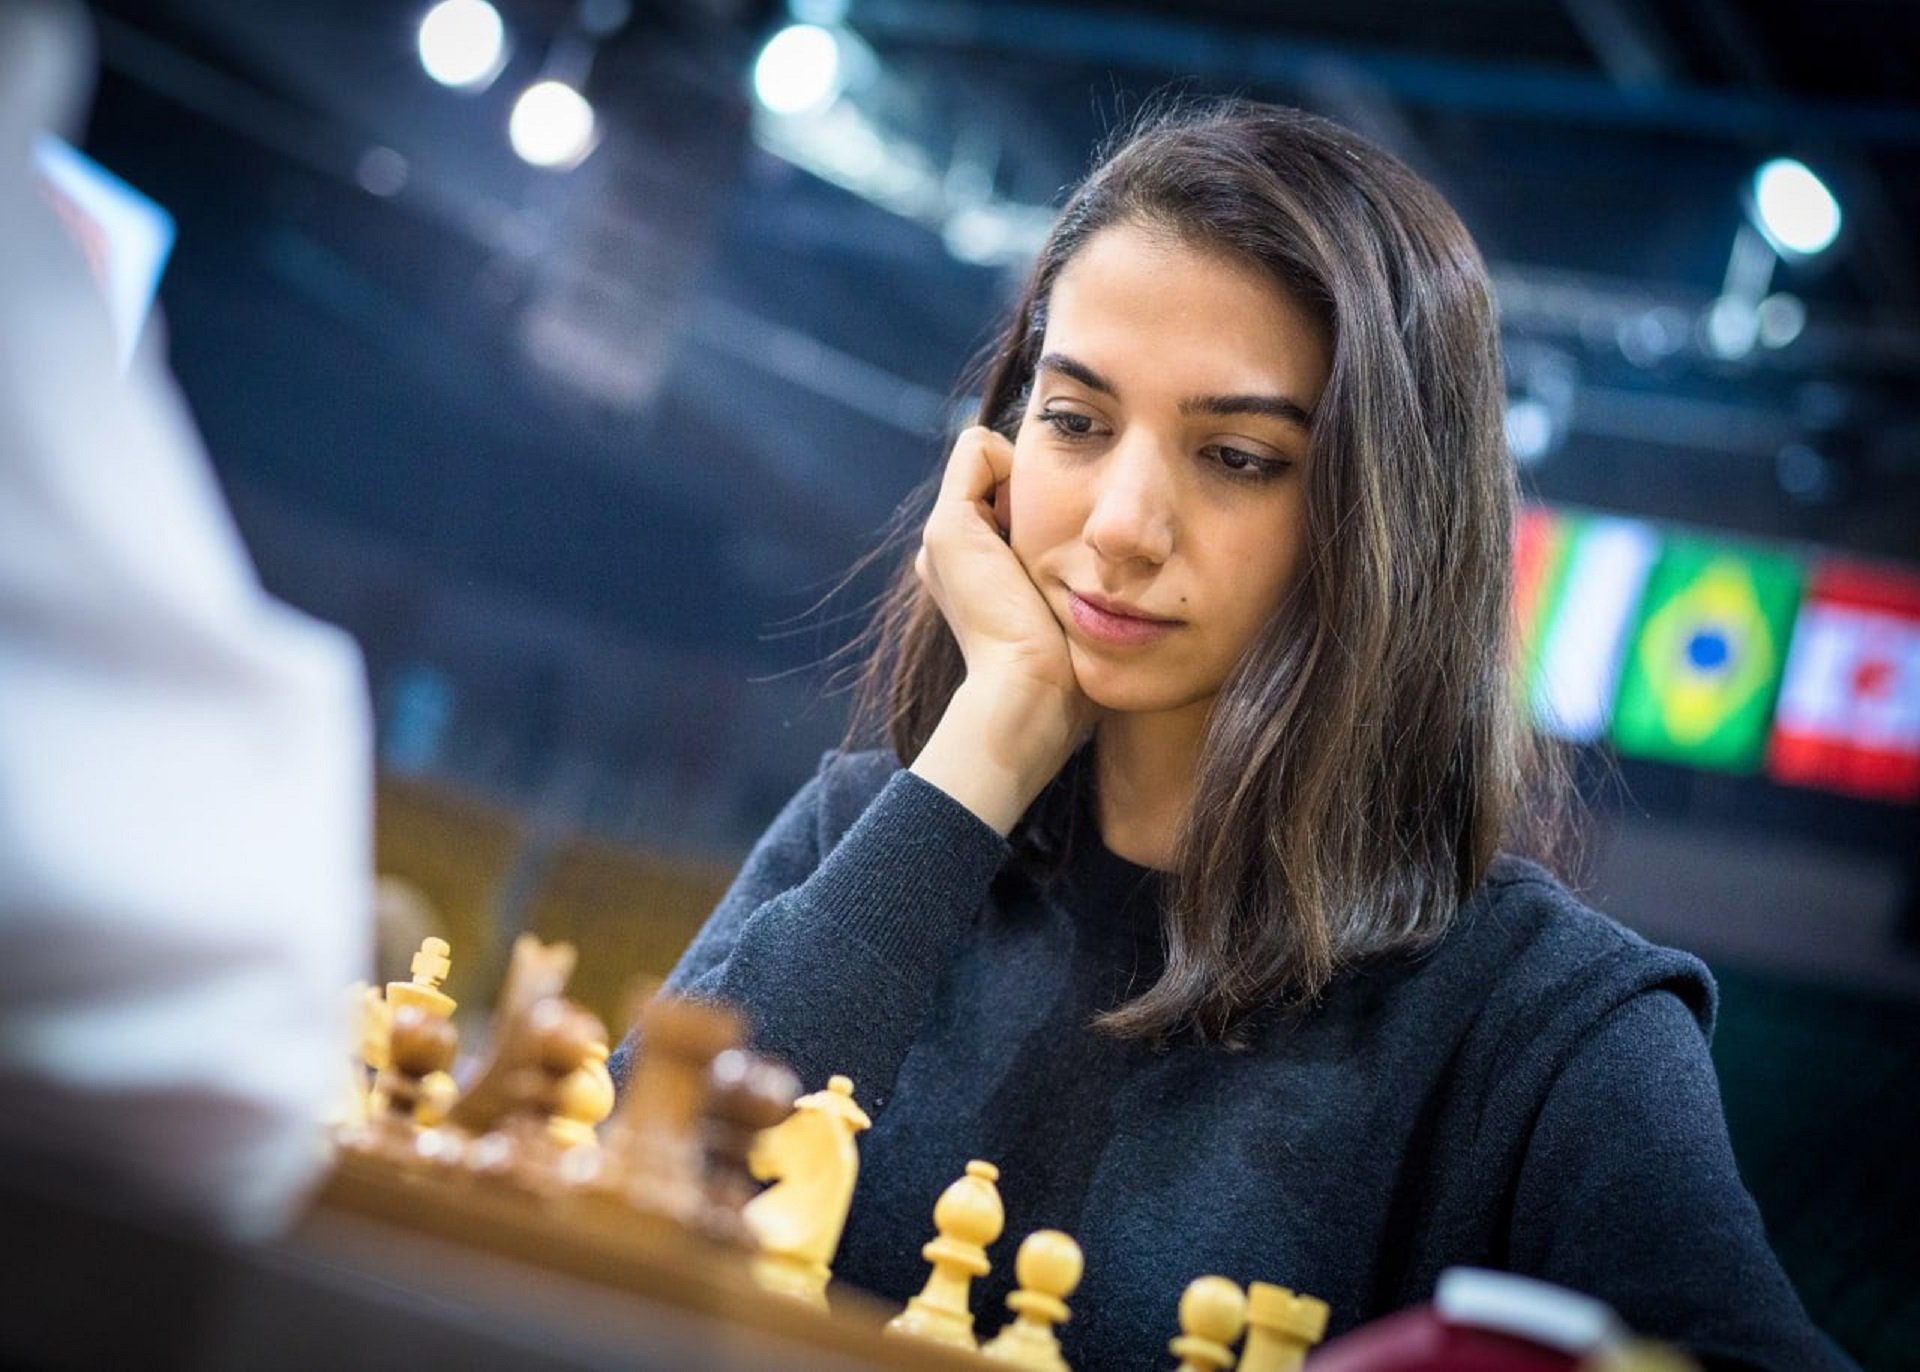 La jugadora d'escacs iraniana Sara Khadem desafia el règim i competeix sense vel al Mundial